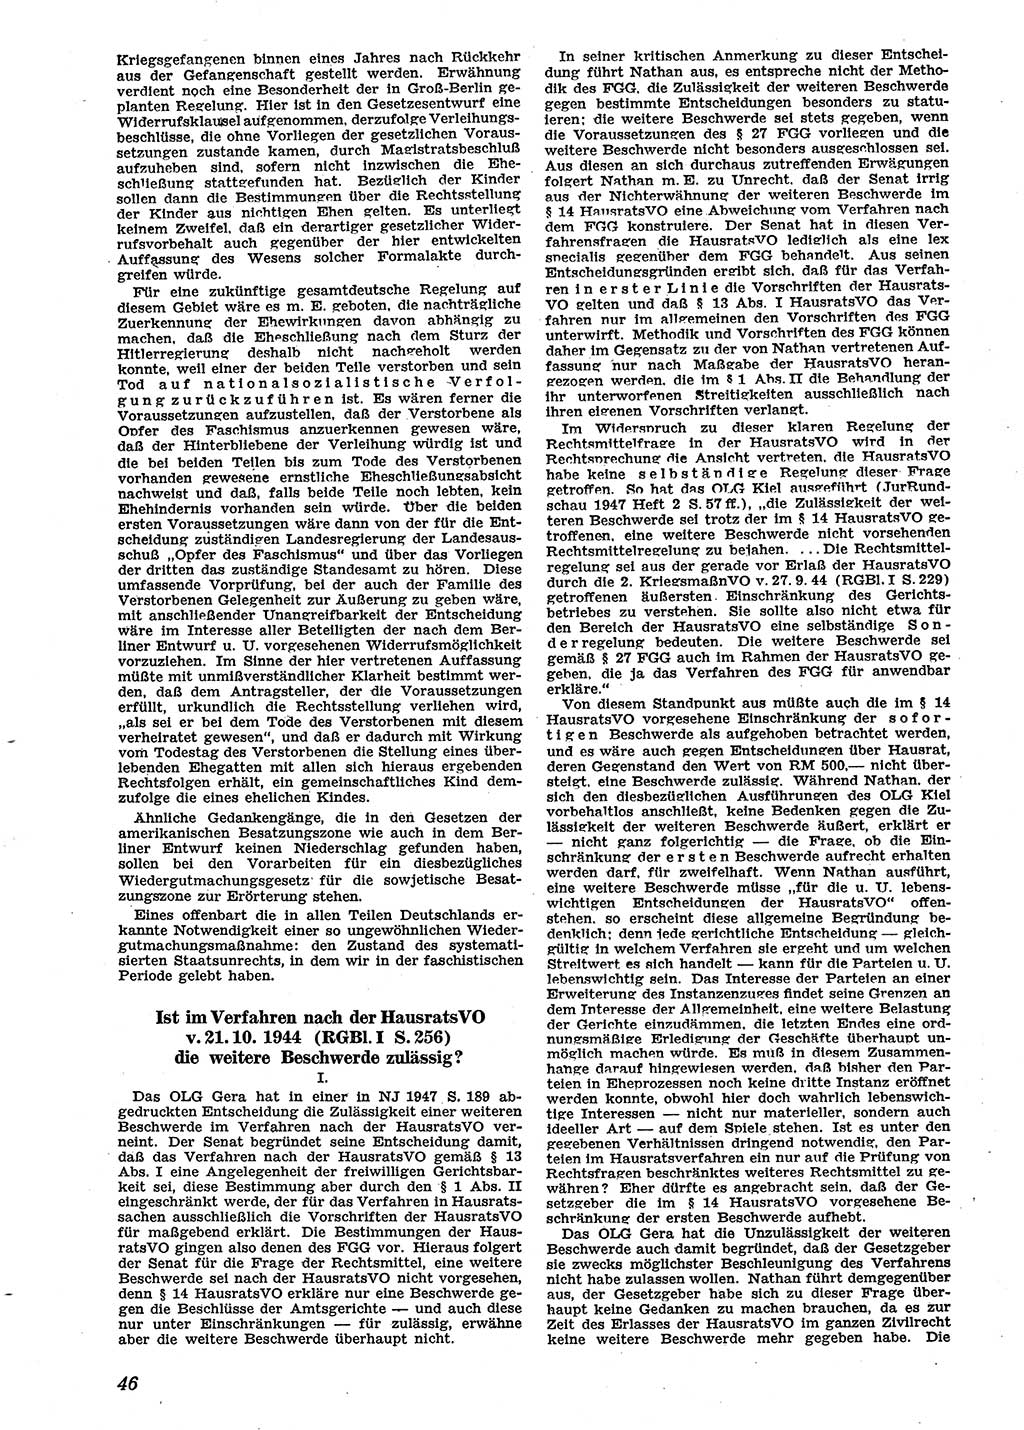 Neue Justiz (NJ), Zeitschrift für Recht und Rechtswissenschaft [Sowjetische Besatzungszone (SBZ) Deutschland], 2. Jahrgang 1948, Seite 46 (NJ SBZ Dtl. 1948, S. 46)